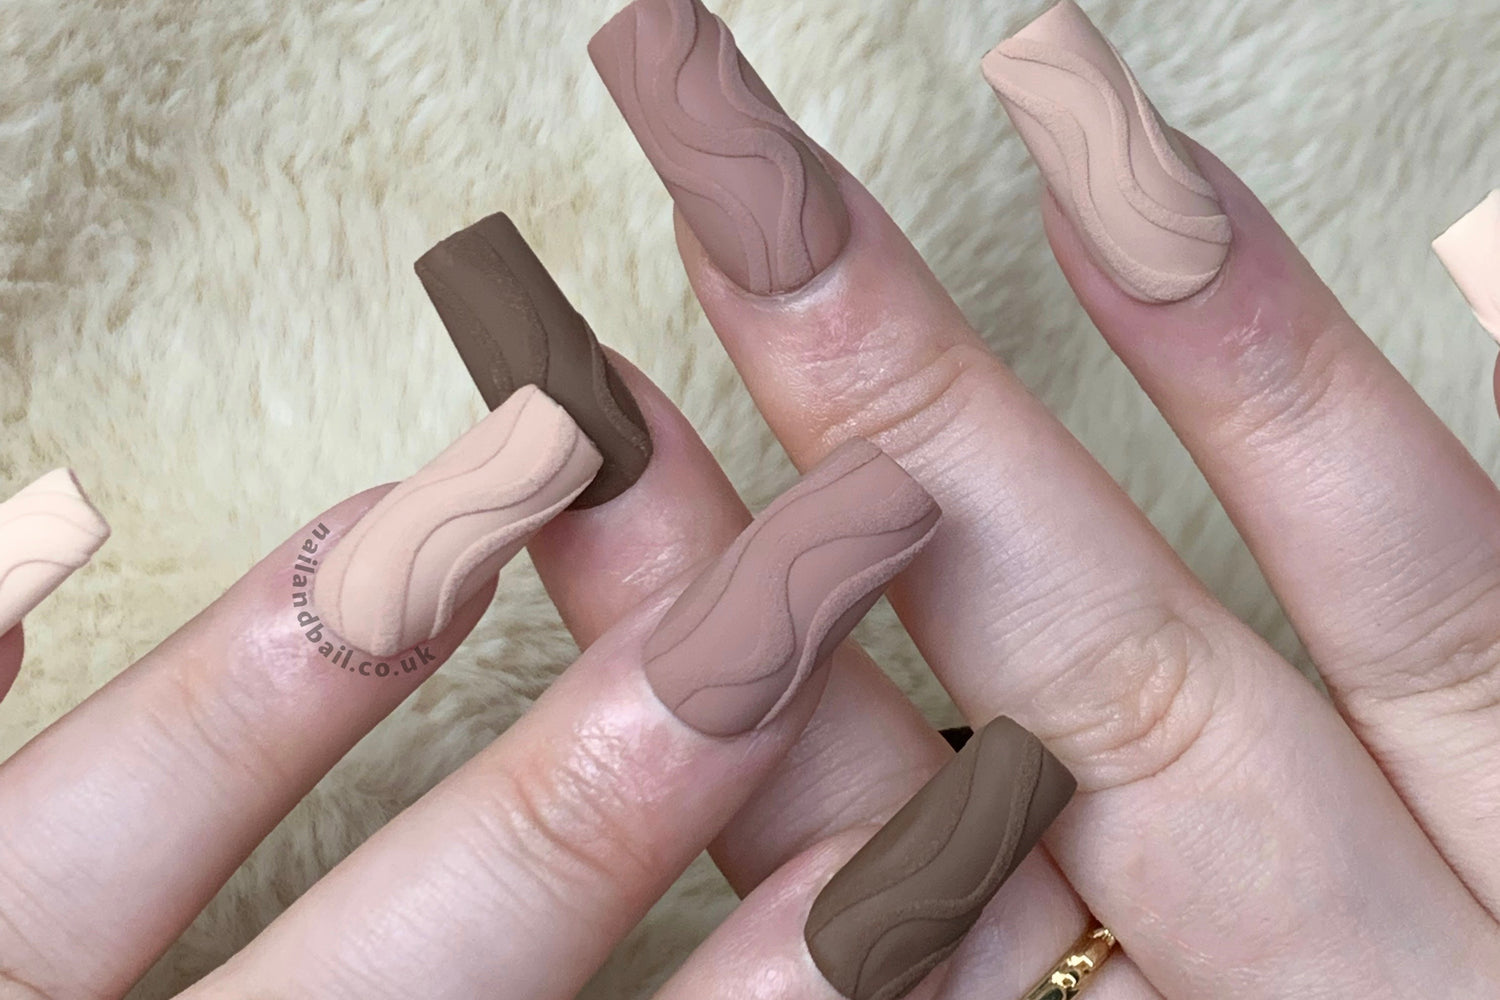 Louis Vuitton X Hello Kitty Press On Nails : u/nailandbailuk